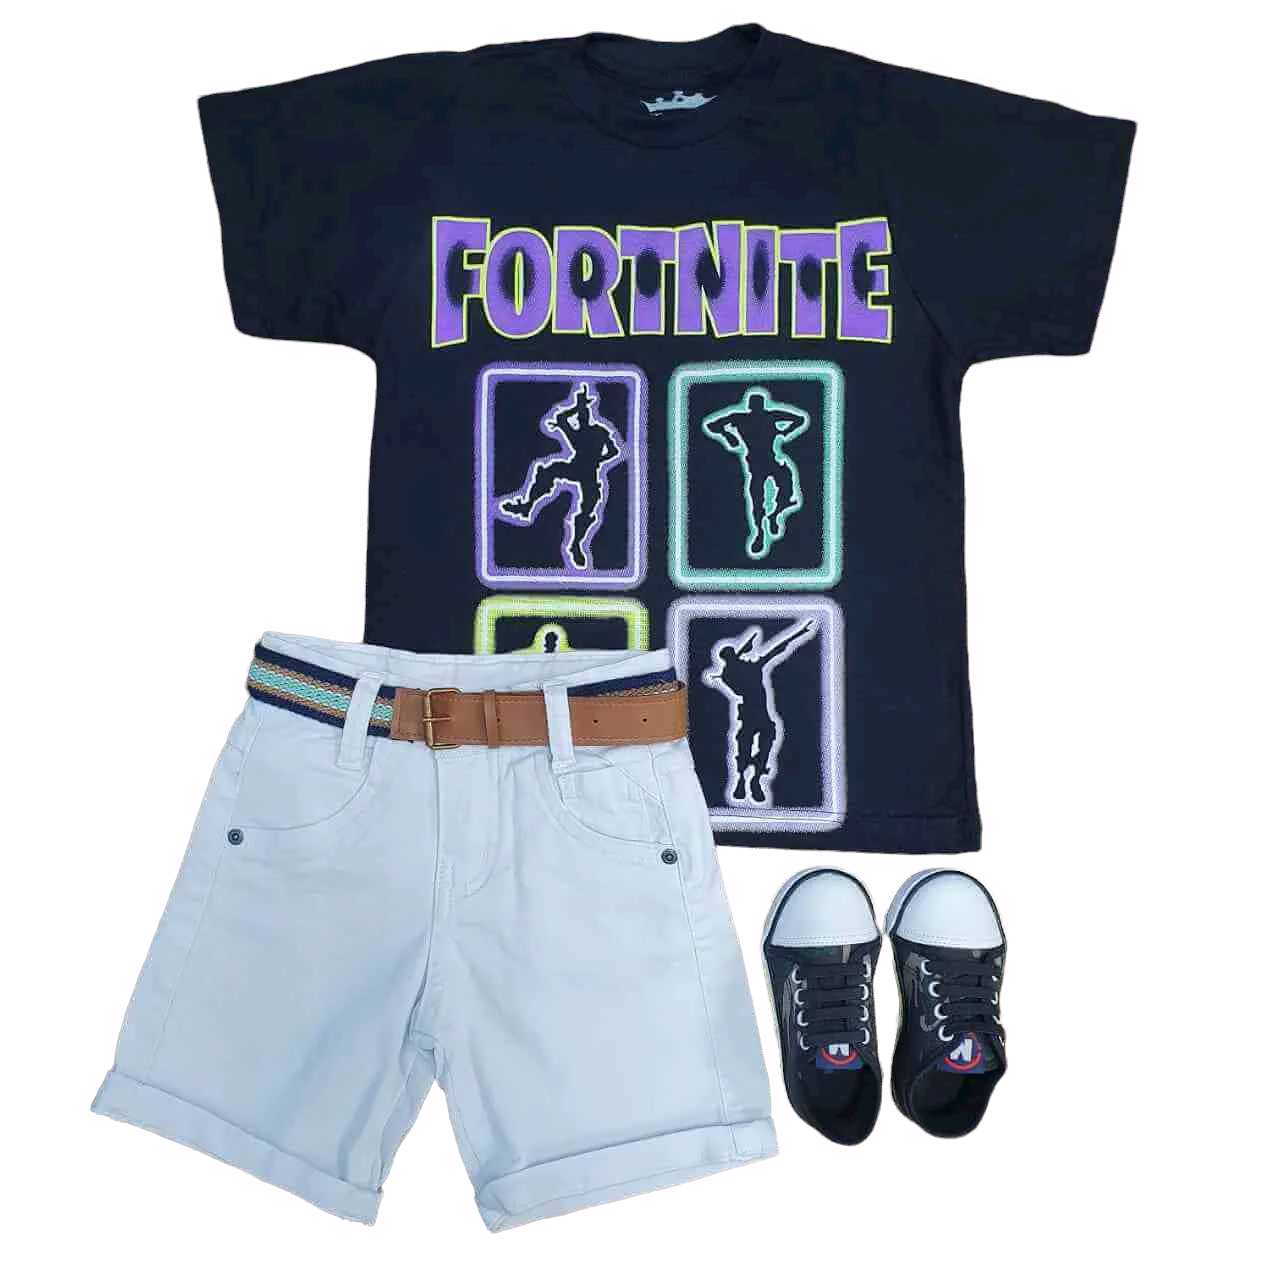 Bermuda com Camiseta Fortnite Infantil  - Lojinha da Vivi